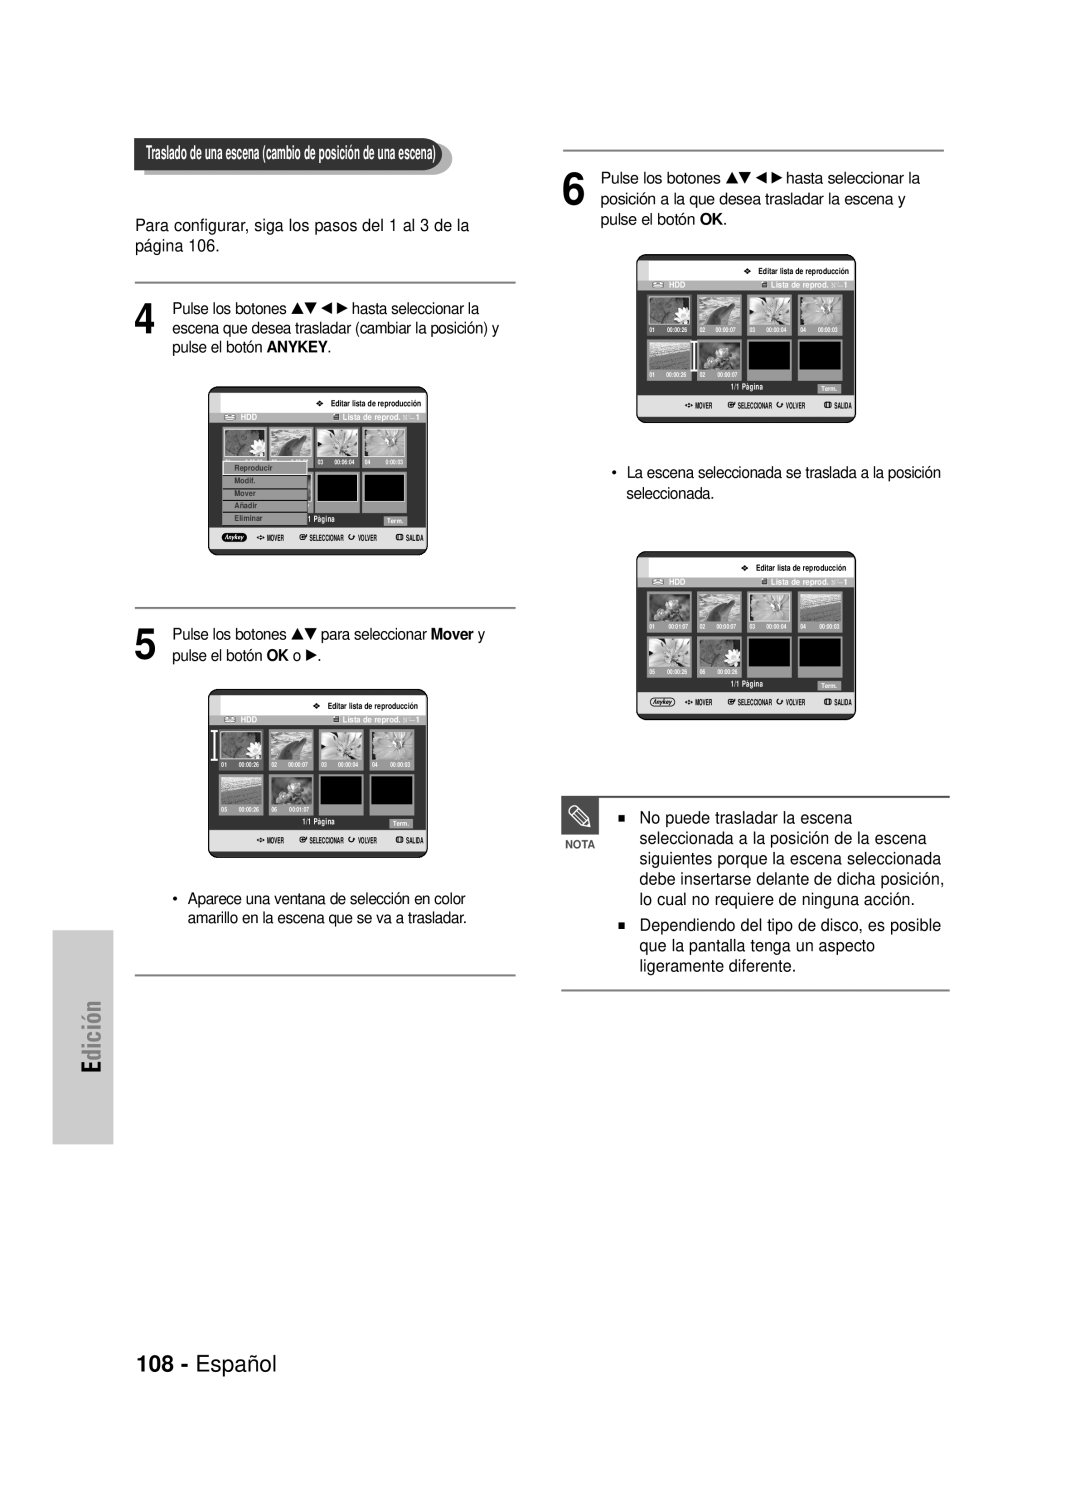 Samsung DVD-HR725/XEG Español, Edición, Para configurar, siga los pasos del 1 al 3 de la página, pulse el botón ANYKEY 